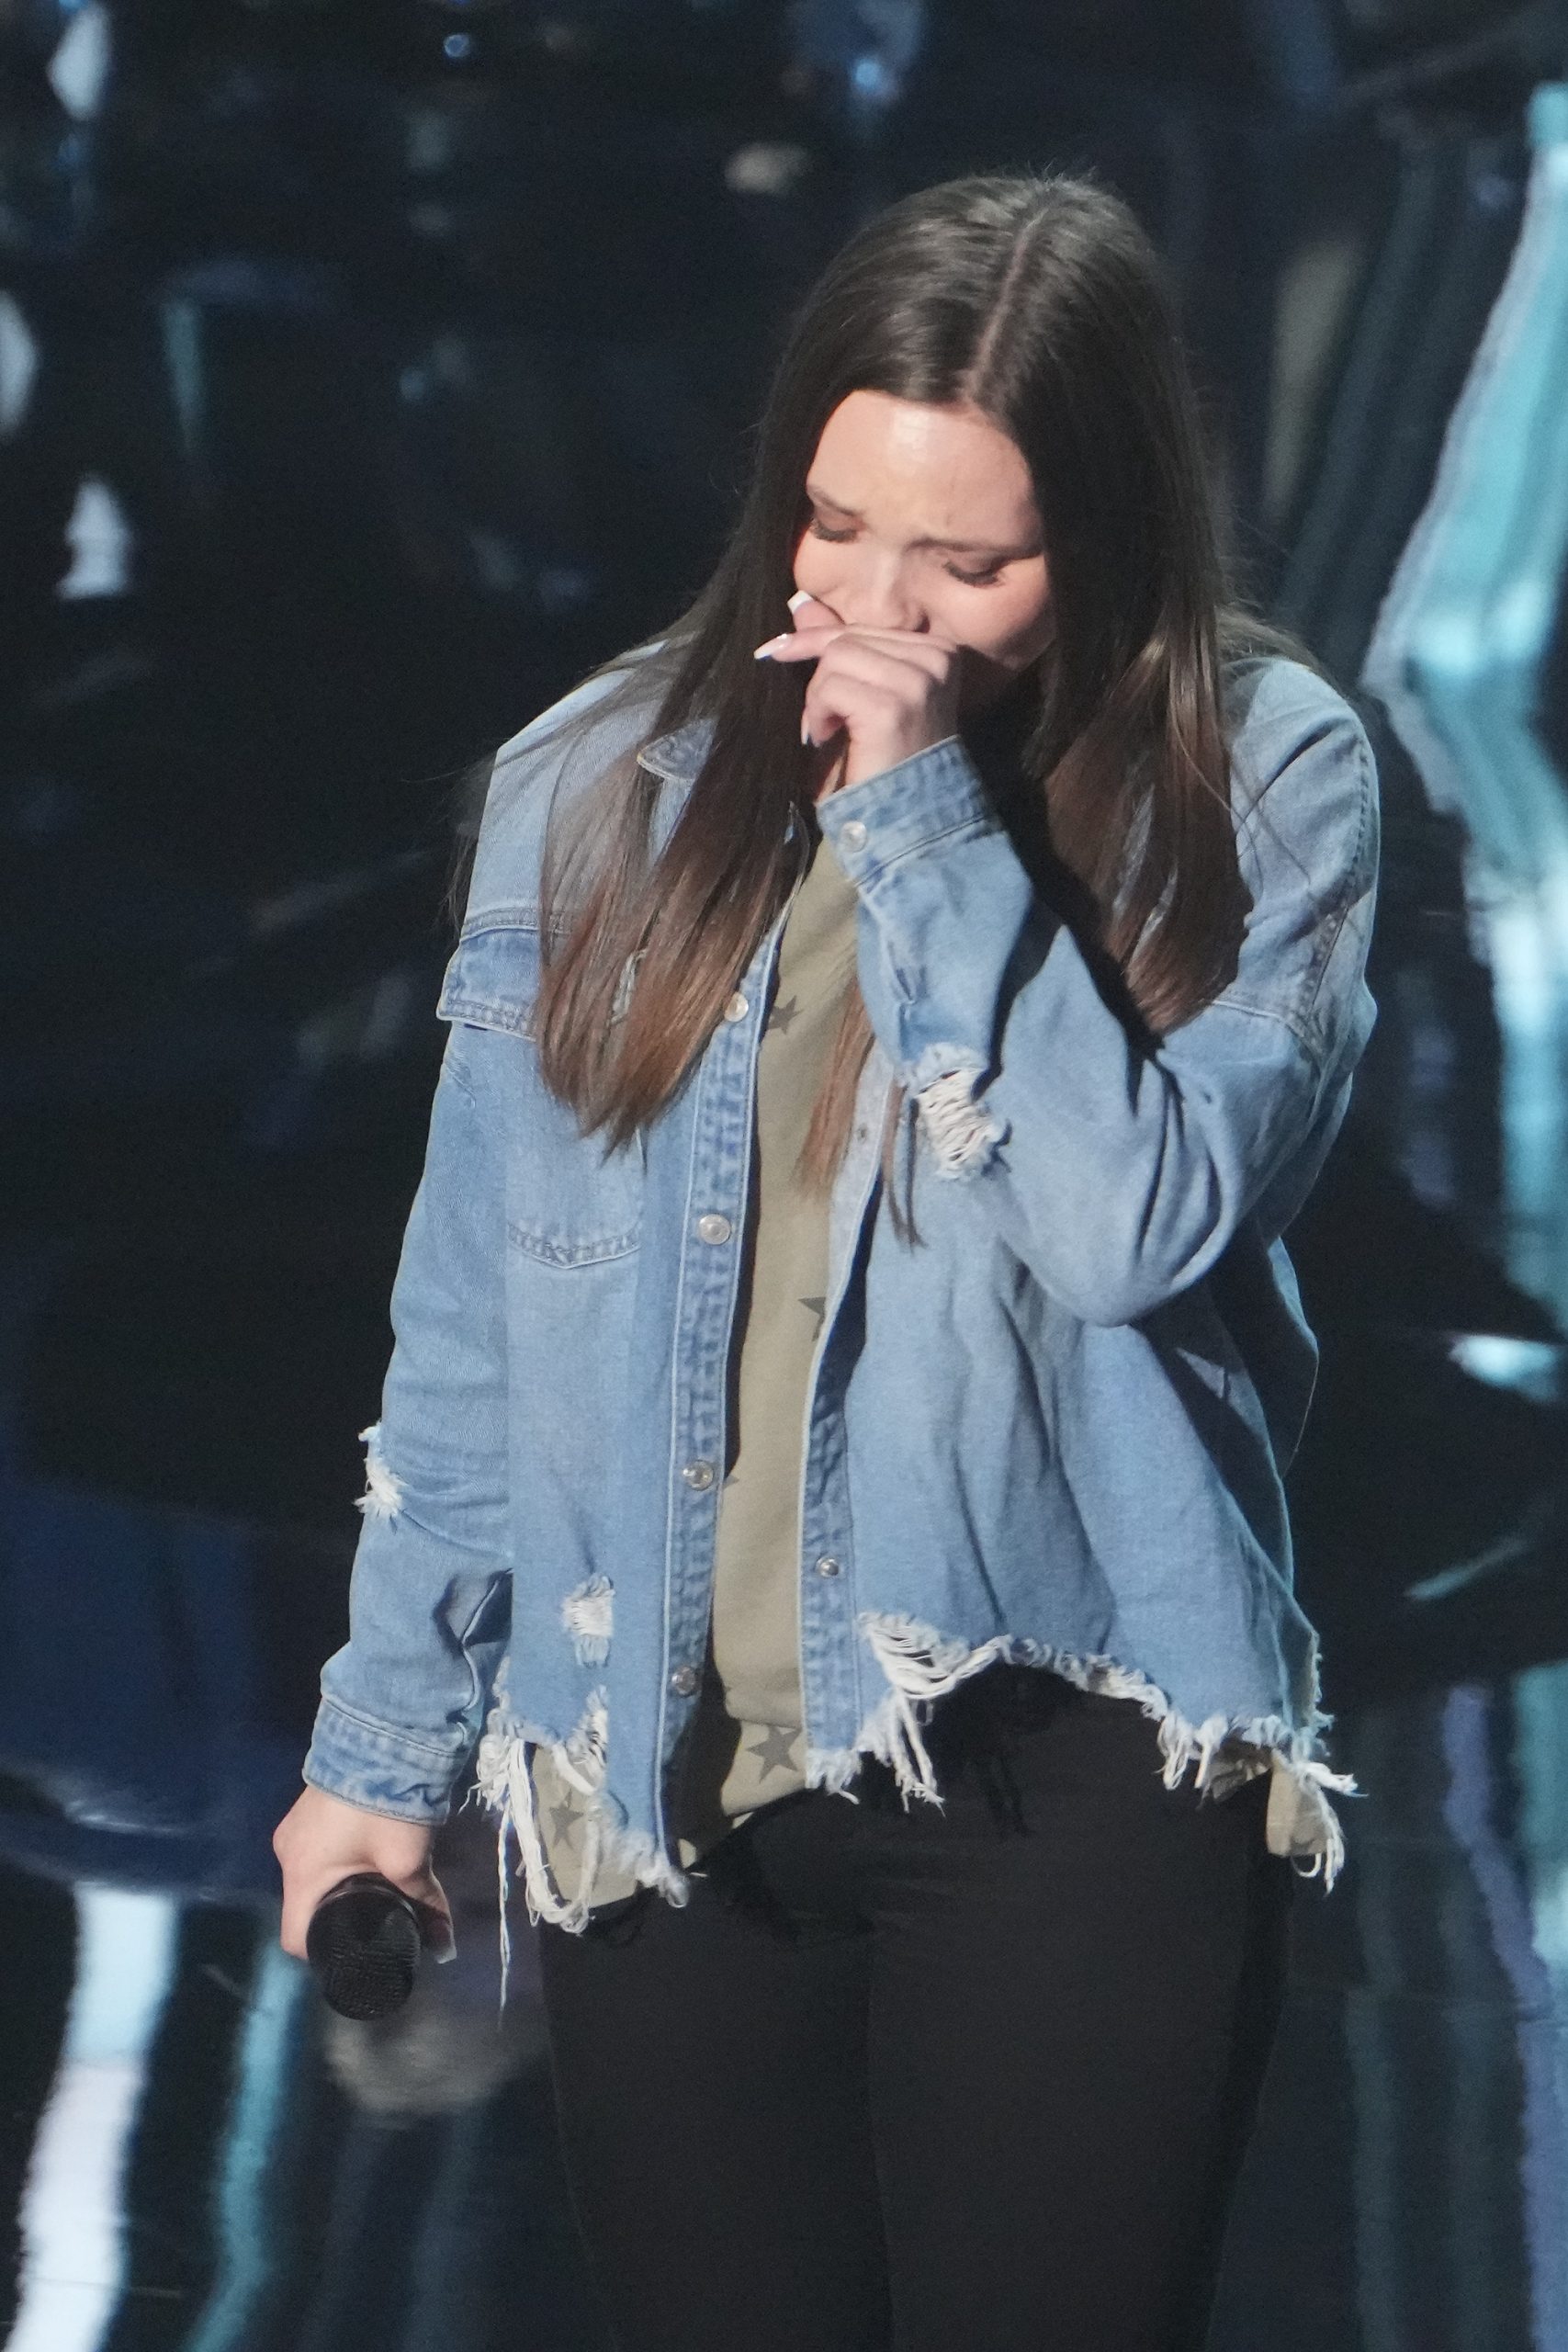 MEGAN DANIELLE on American Idol